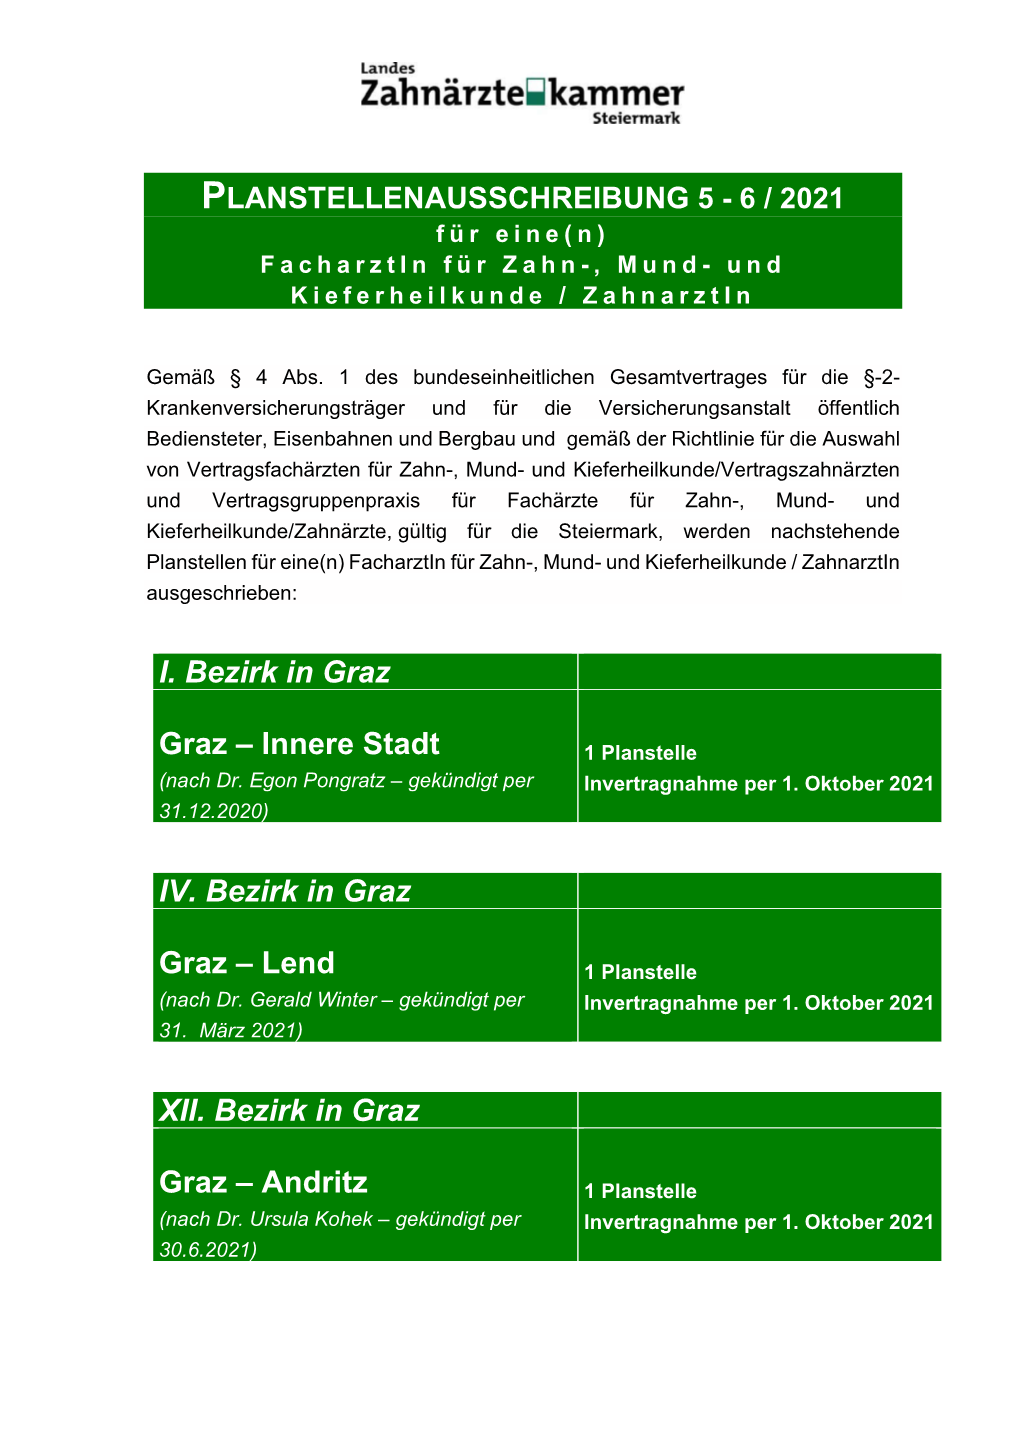 Lend XII. Bezirk in Graz Graz – Andritz